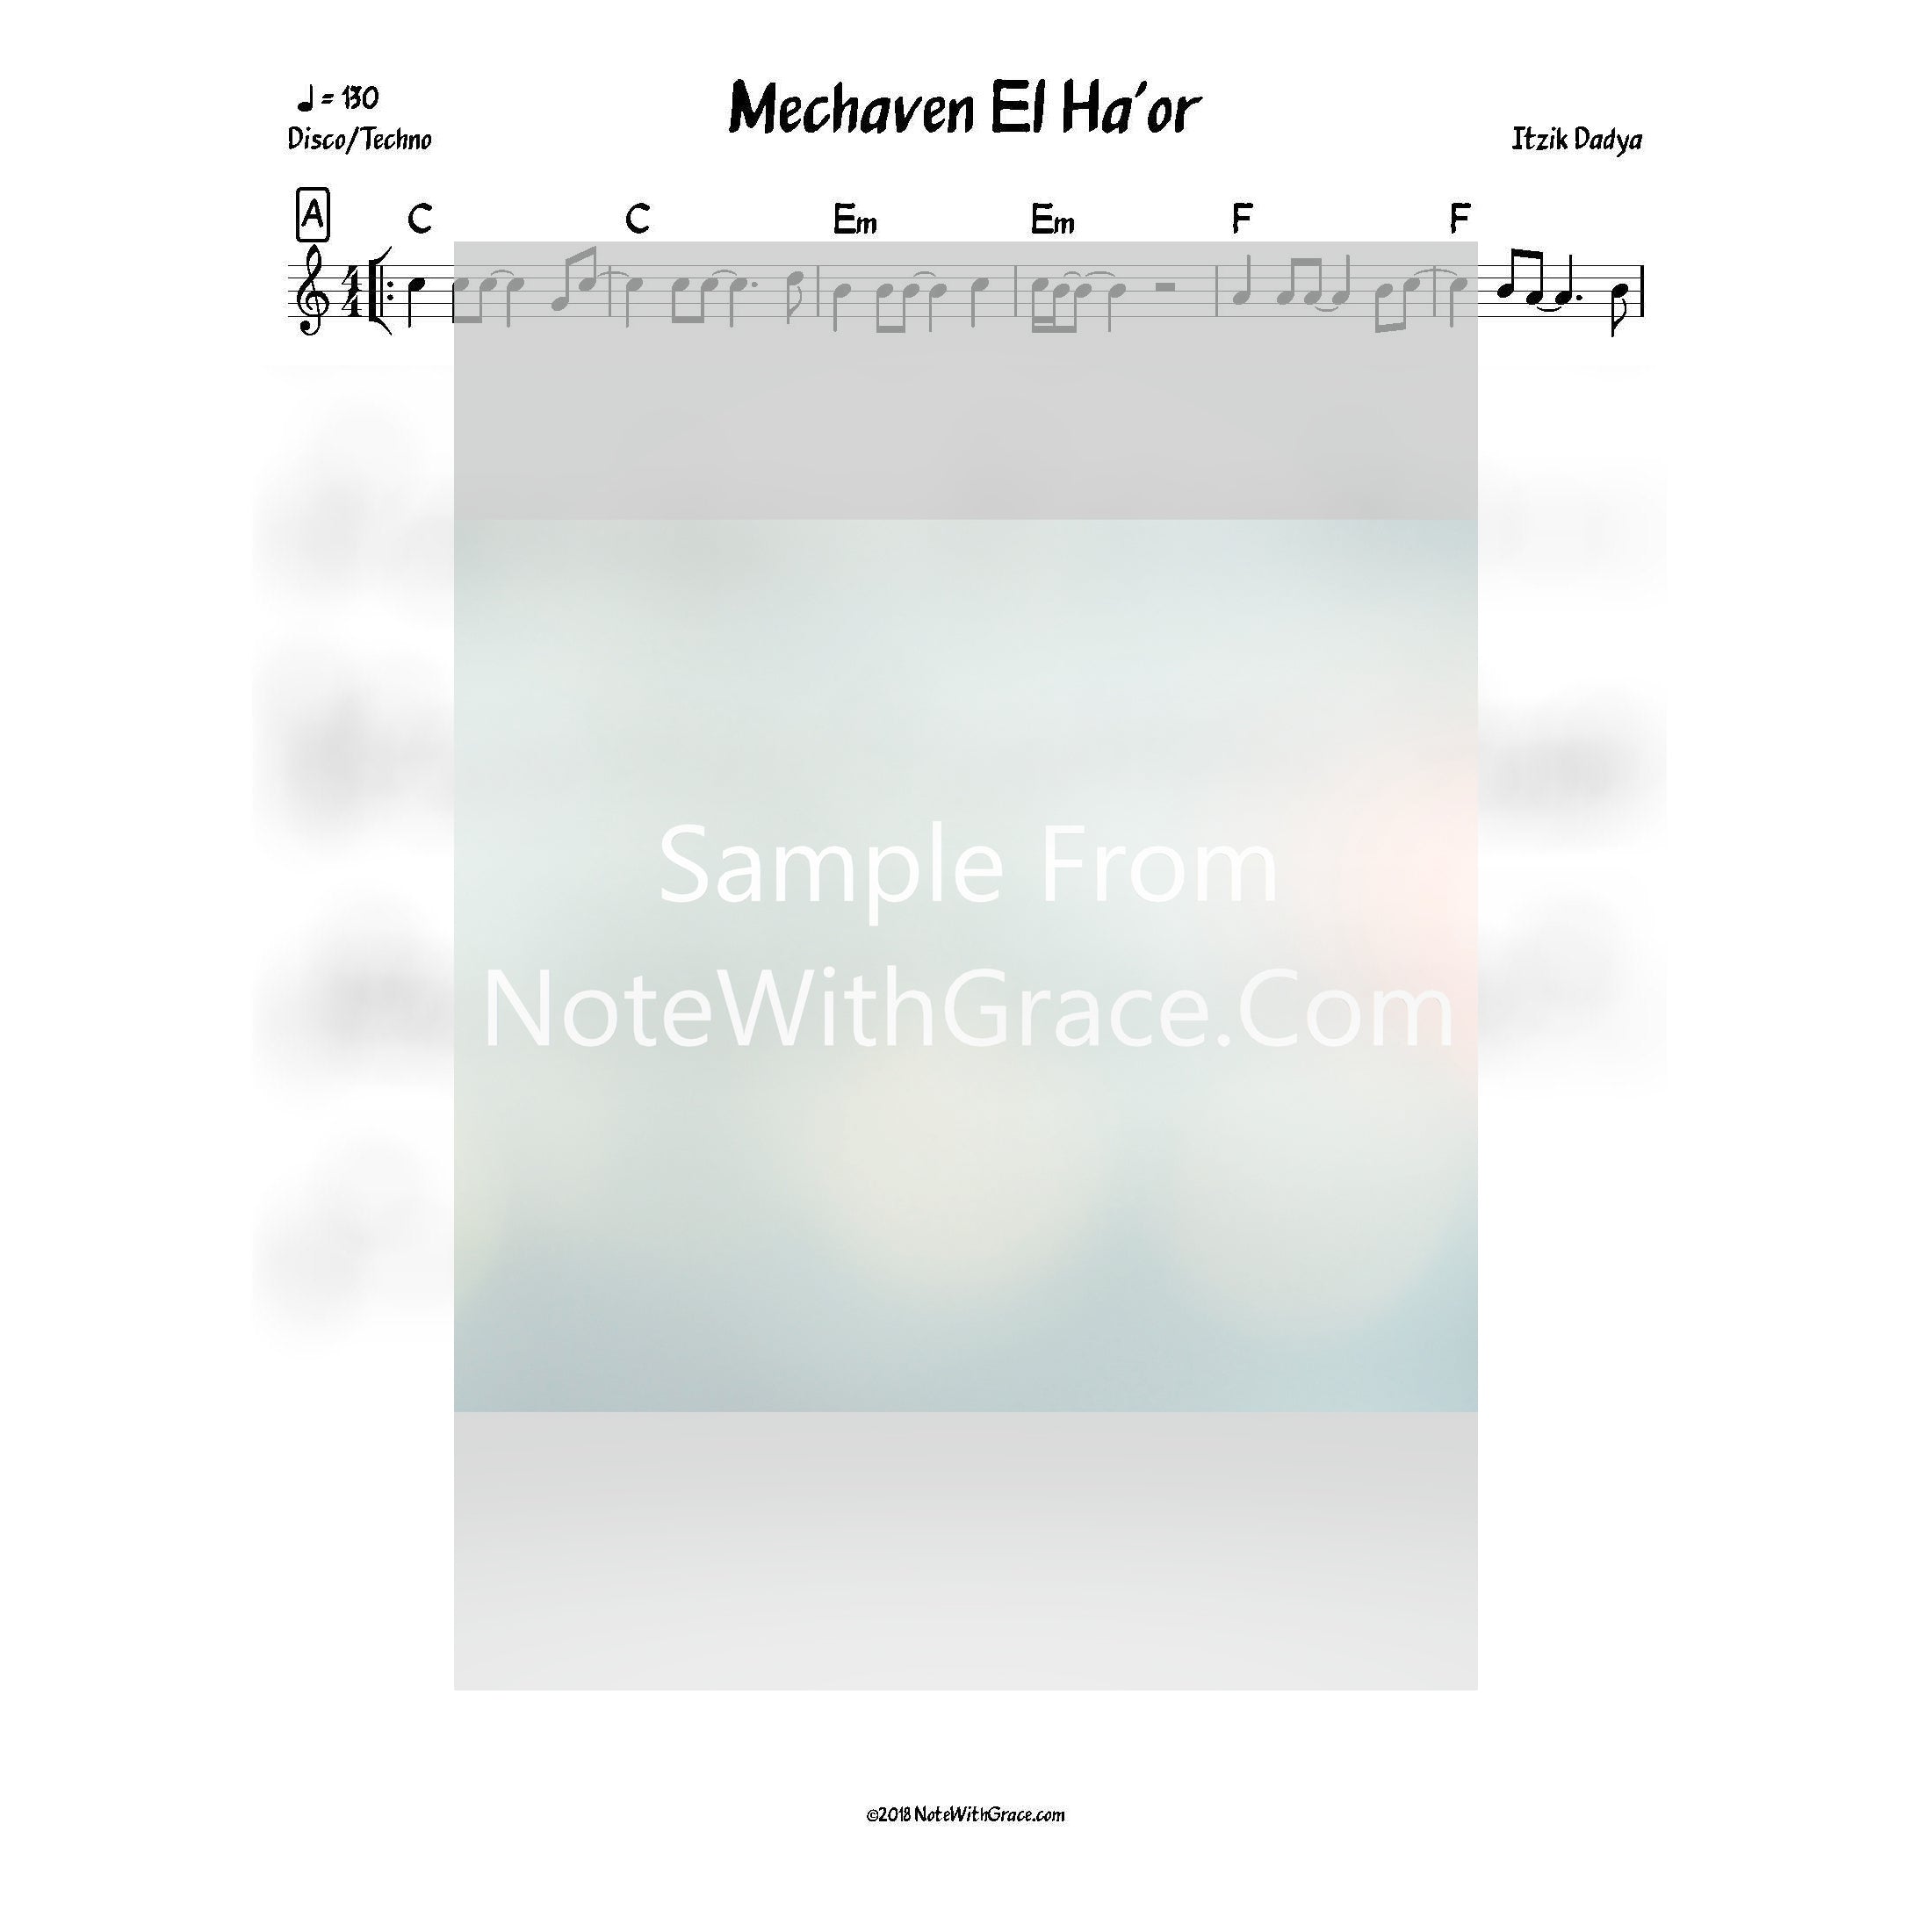 Mechaven El Haor Lead Sheet (Itzik Dadya) Album: Mechaven El Haor Released 2014-Sheet music-NoteWithGrace.com